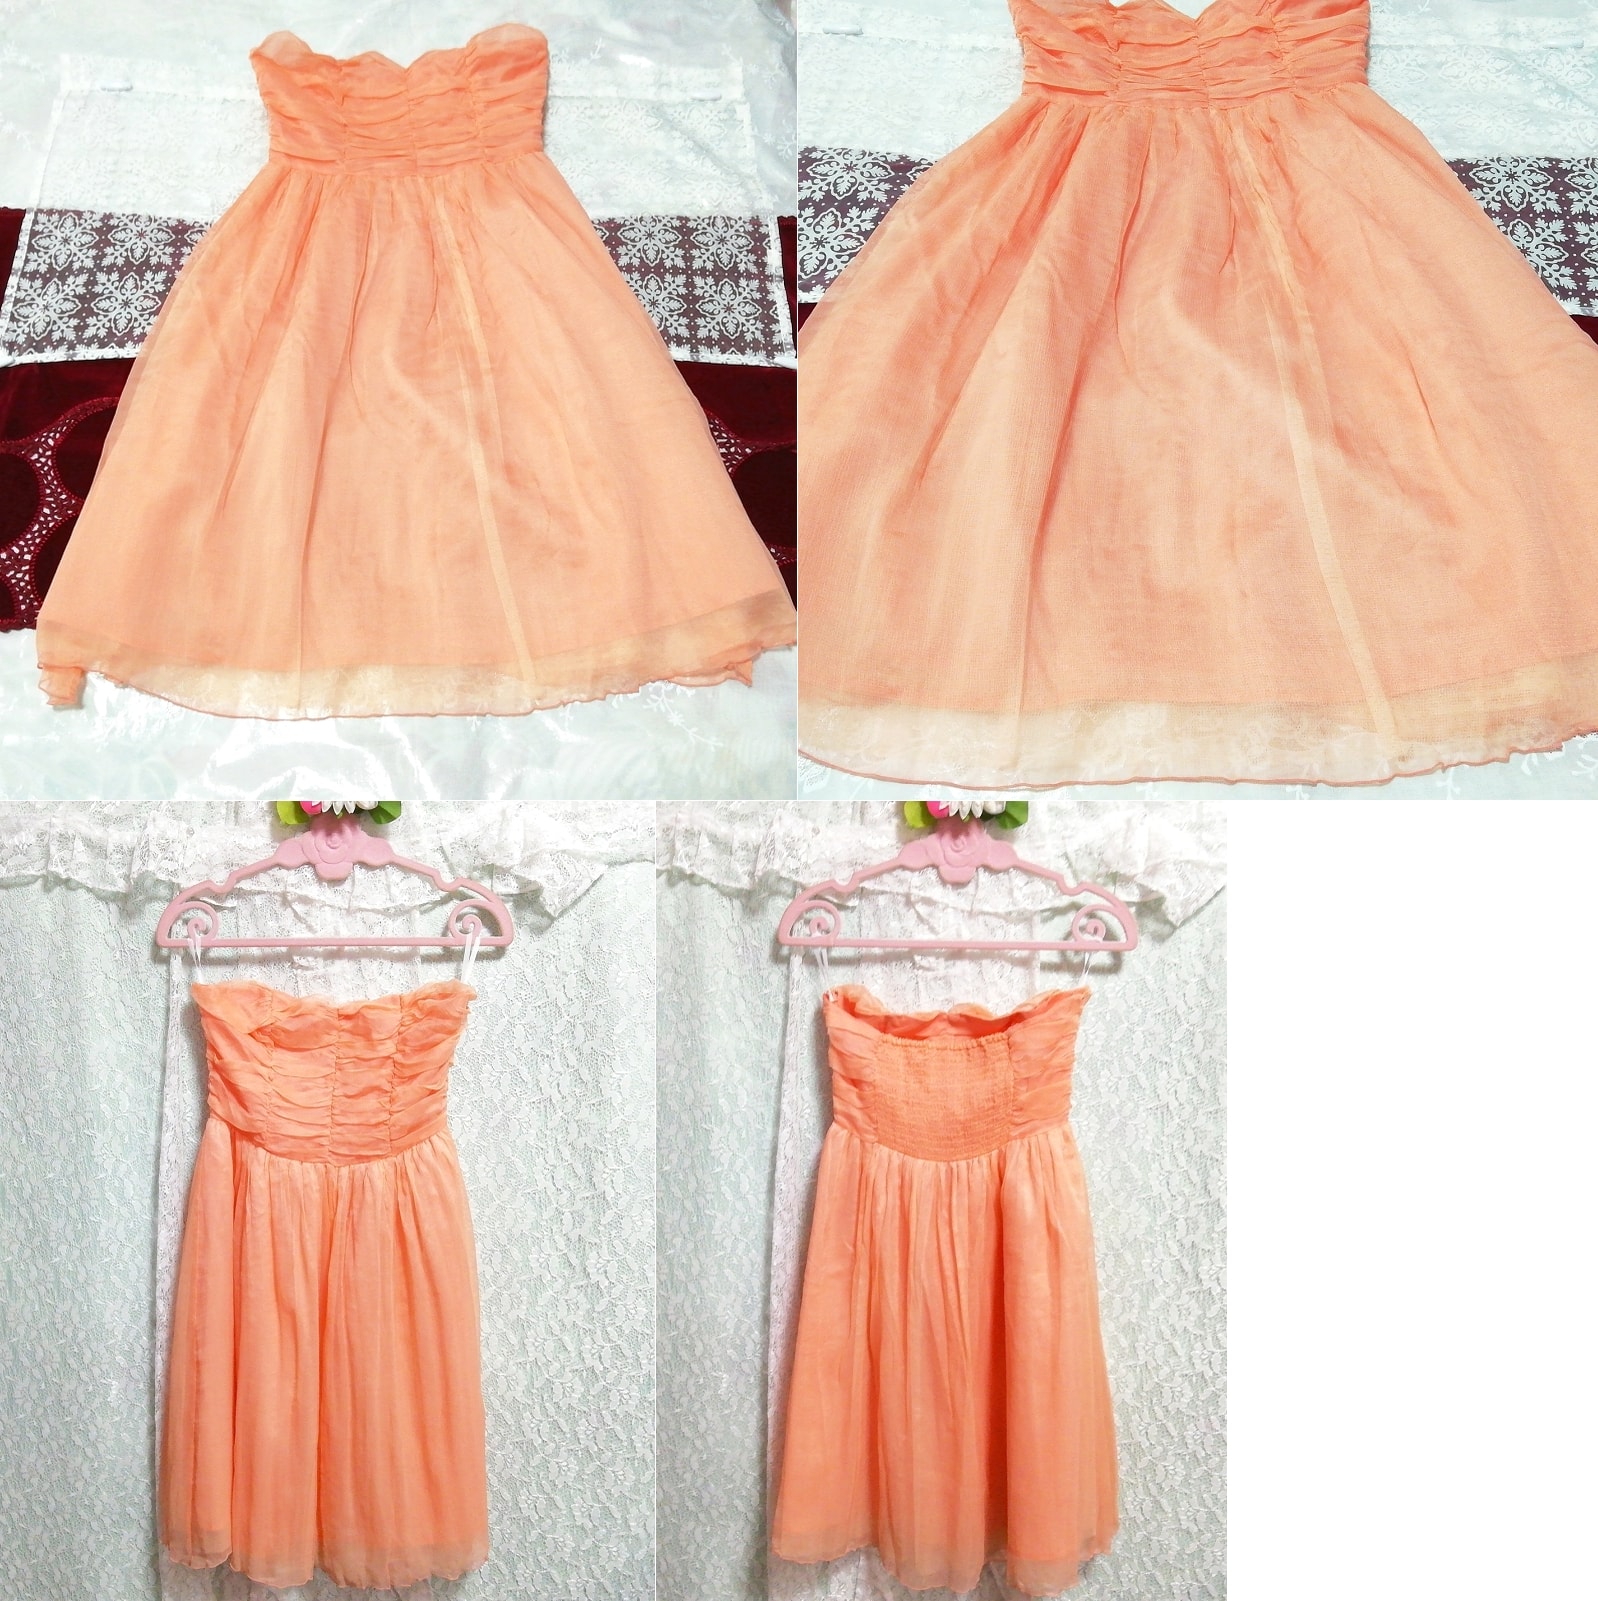 오렌지 쉬폰 실크 네글리제 나이트가운 나이트웨어 드레스, 패션, 숙녀 패션, 잠옷, 잠옷